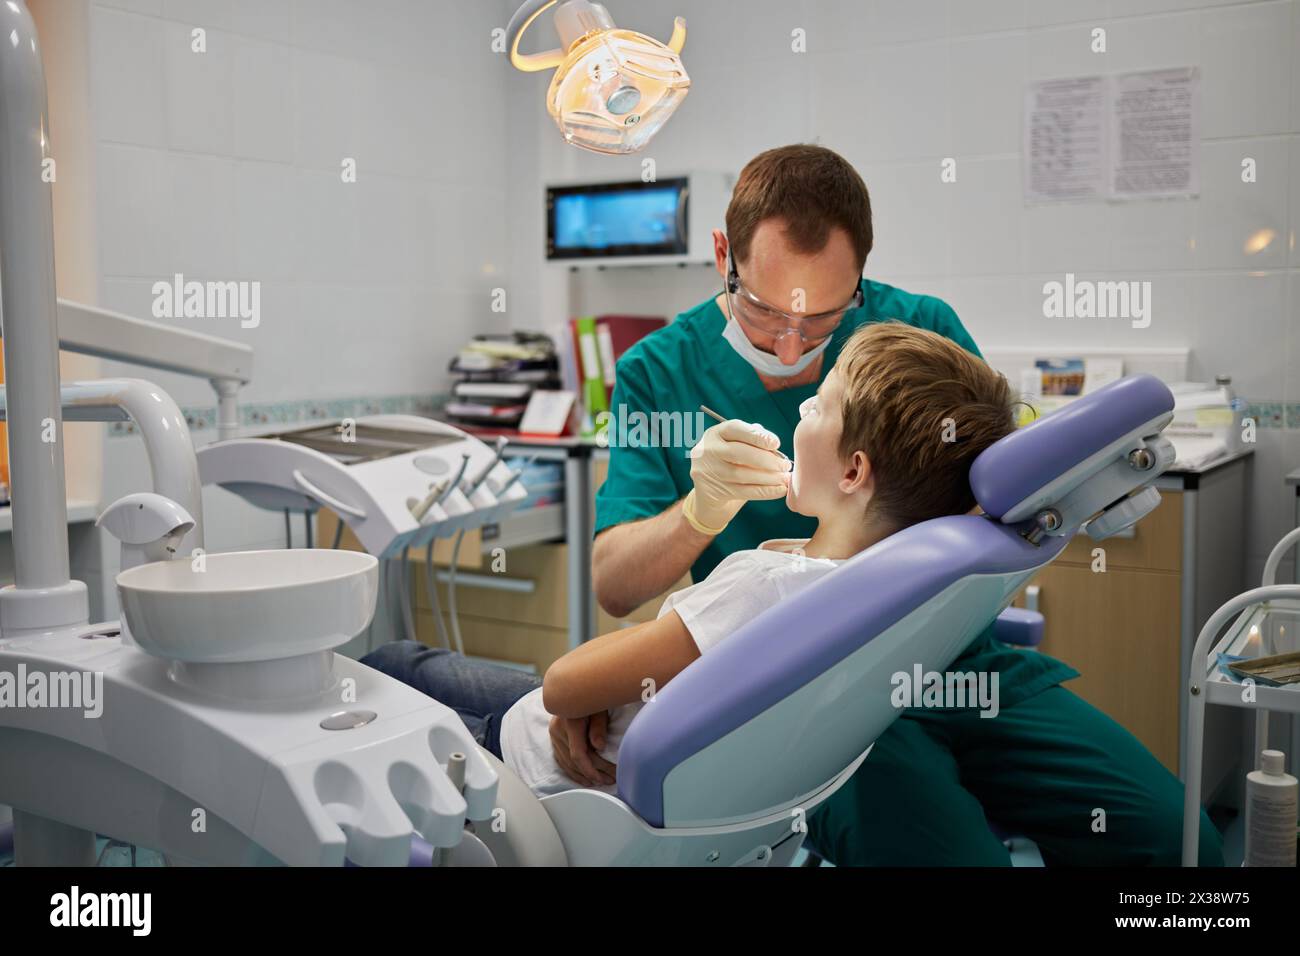 MOSKAU, RUSSLAND - 19. OKT 2016: Zahnarzt untersucht Mund und Zähne eines Jungen, der im Sessel sitzt, im Kinderkrankenhaus Sanare für Kinder jeden Alters Stockfoto